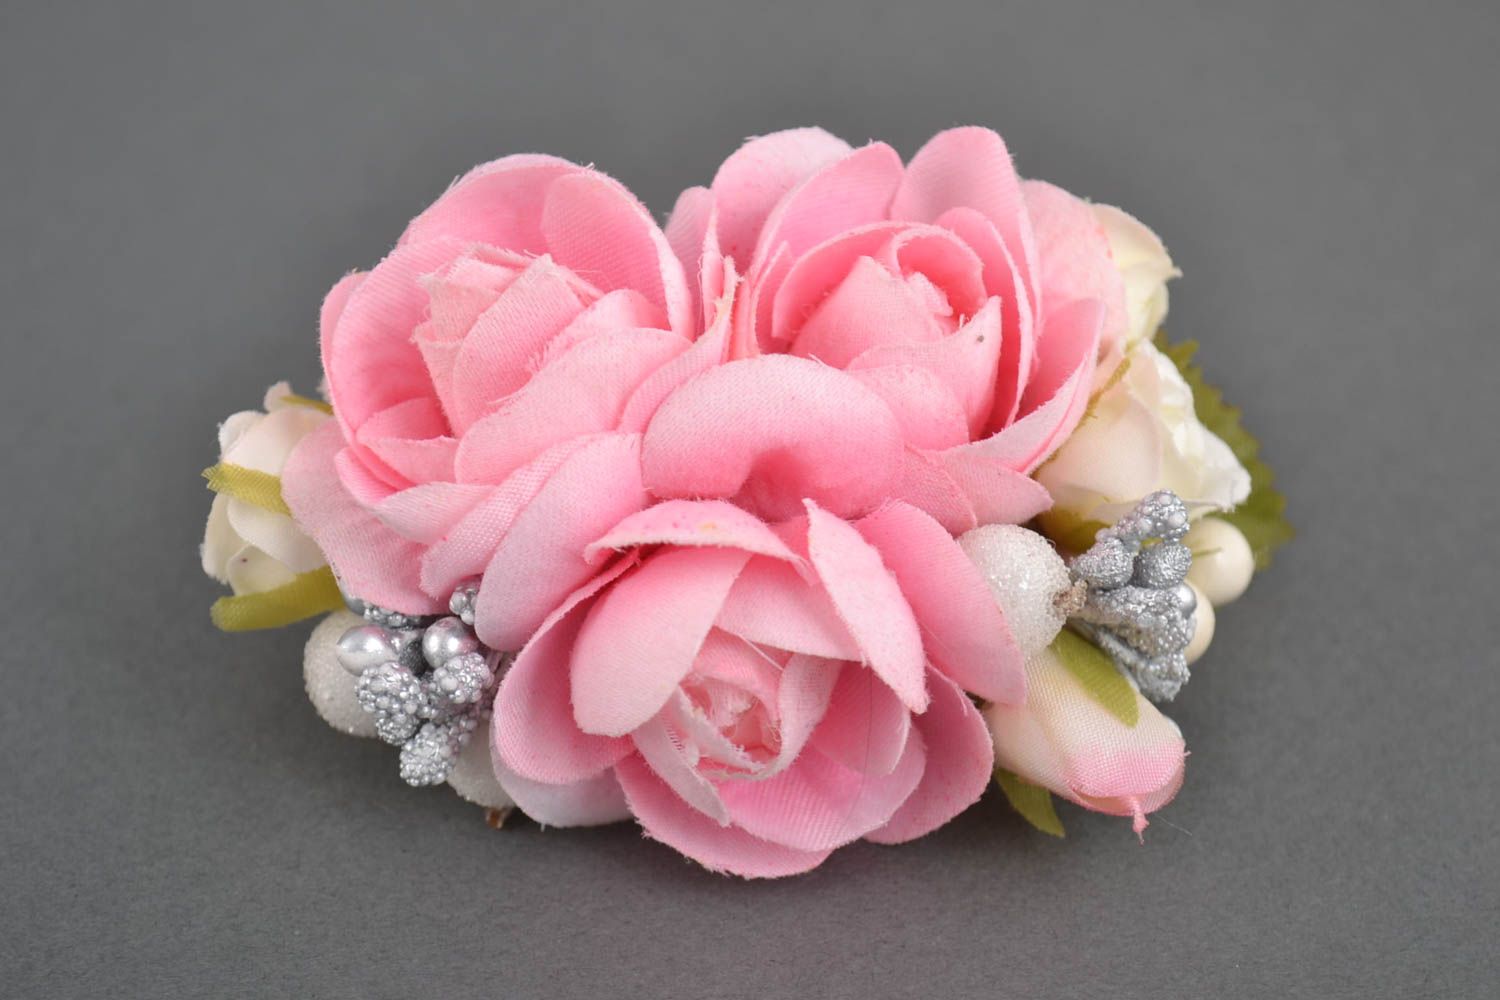 Handmade Armband Trauzeugin Blumenarmband Geschenk für Brautjungfer festlich foto 2